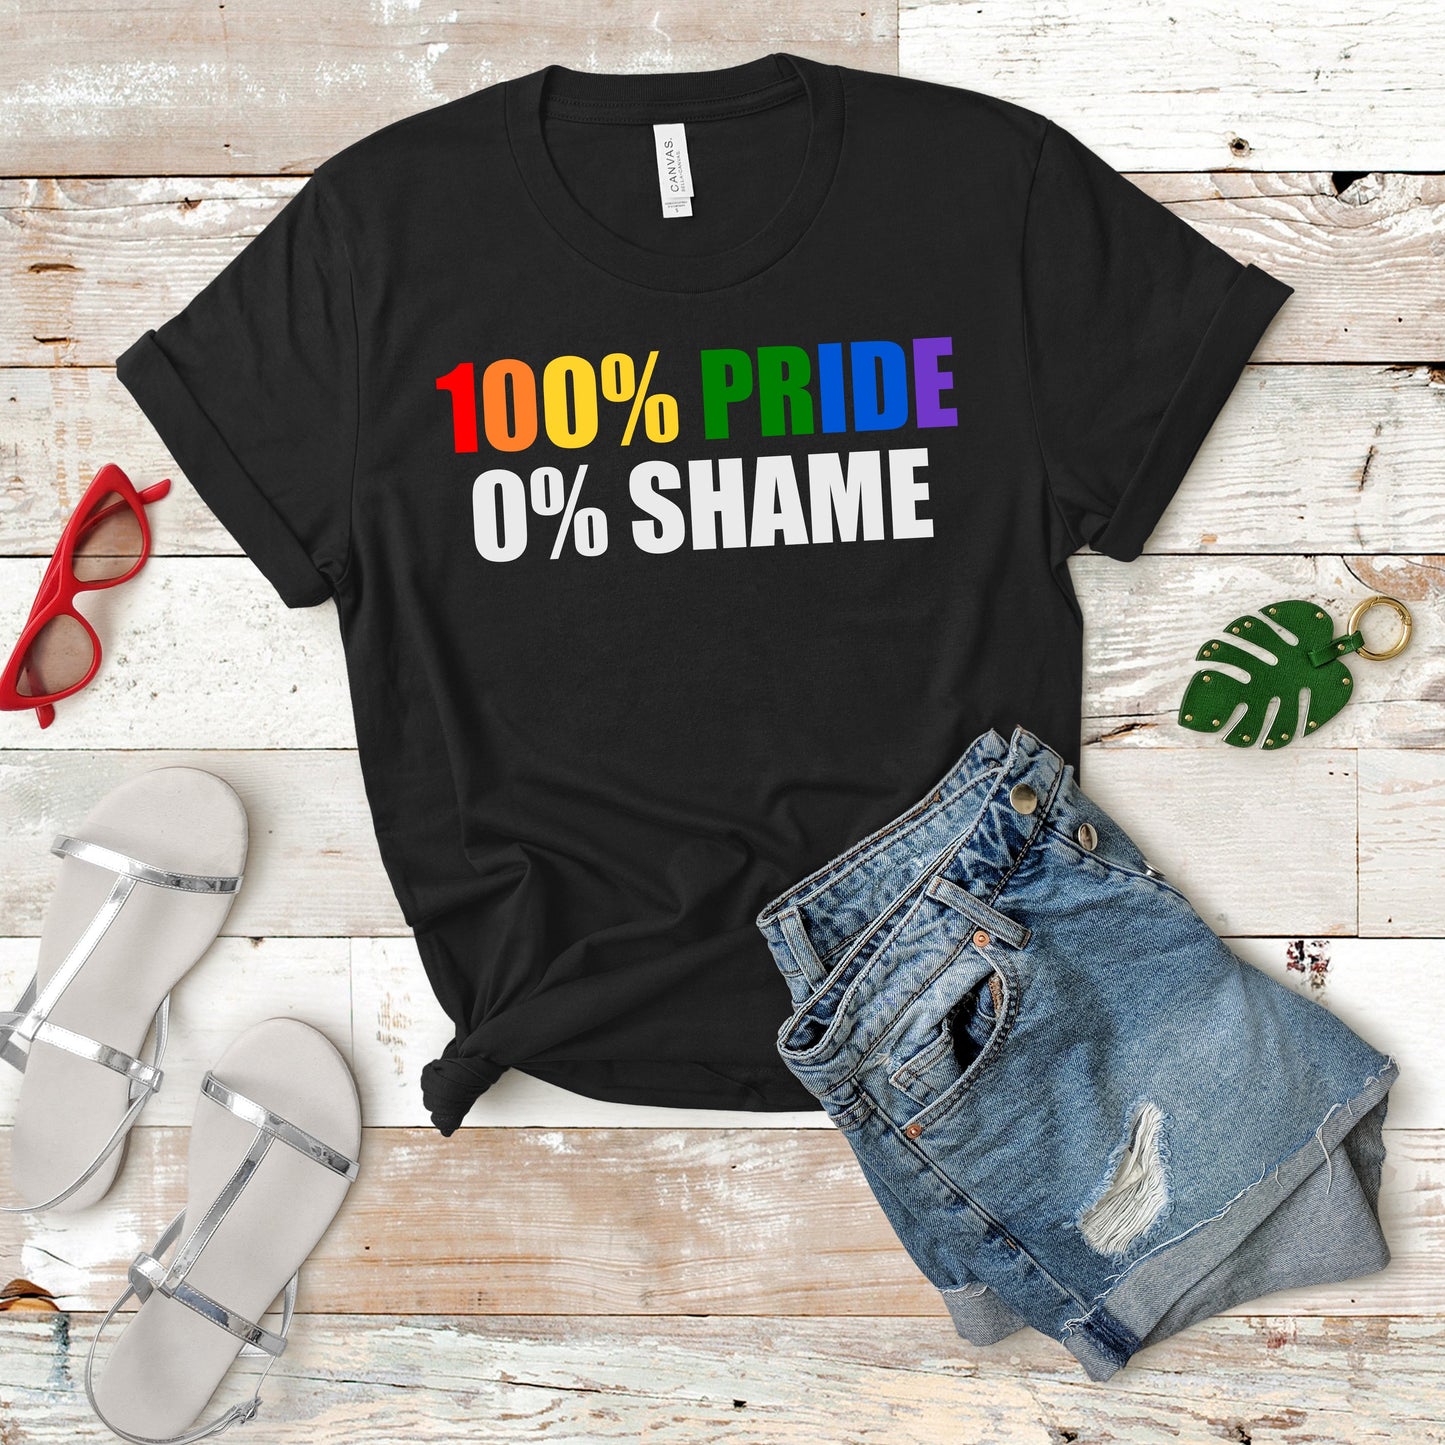 Fantastic, custom "100% PRIDE" T-shirt